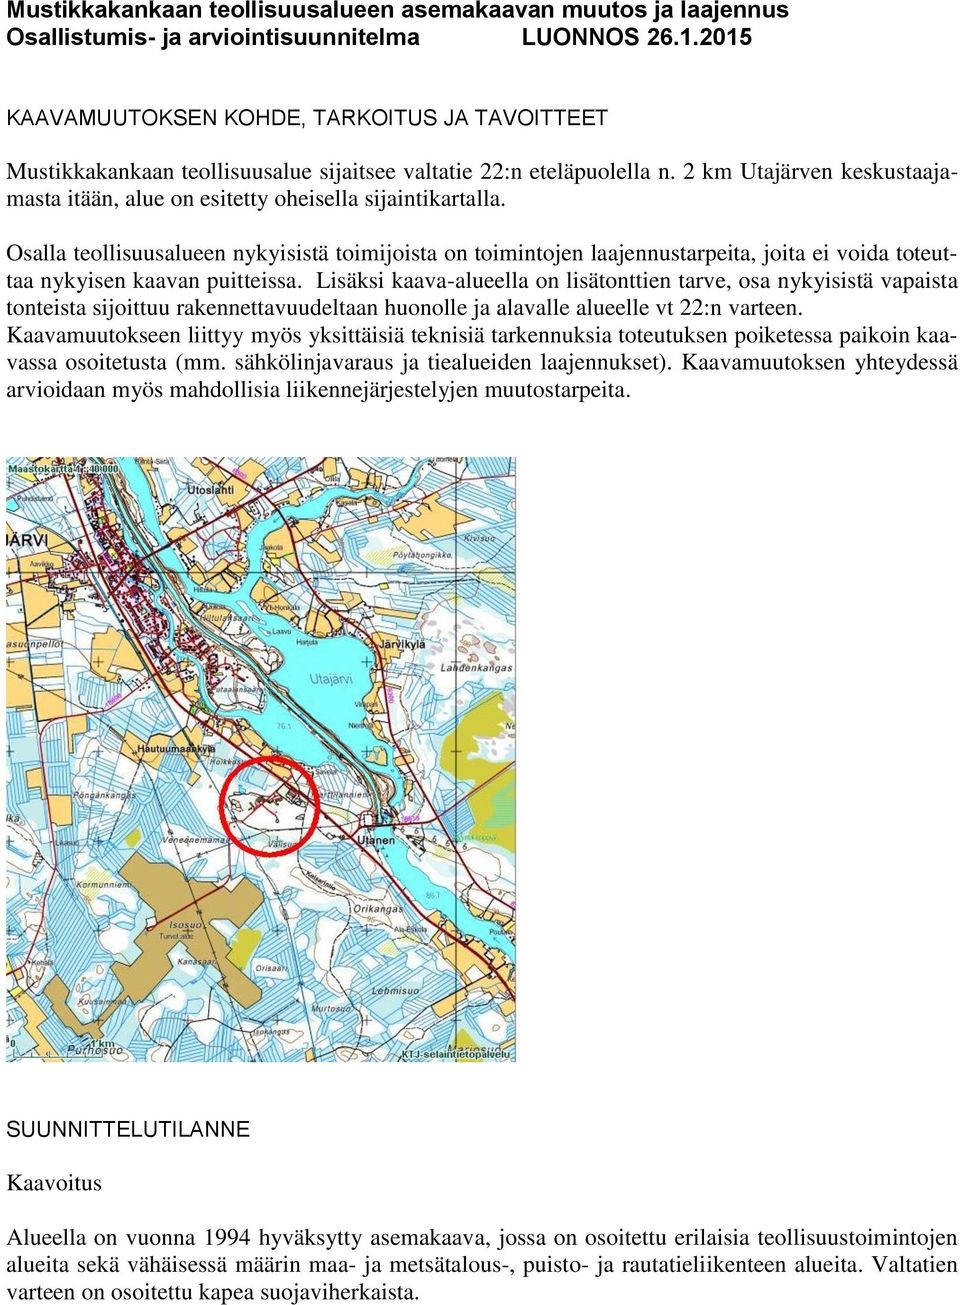 2 km Utajärven keskustaajamasta itään, alue on esitetty oheisella sijaintikartalla.